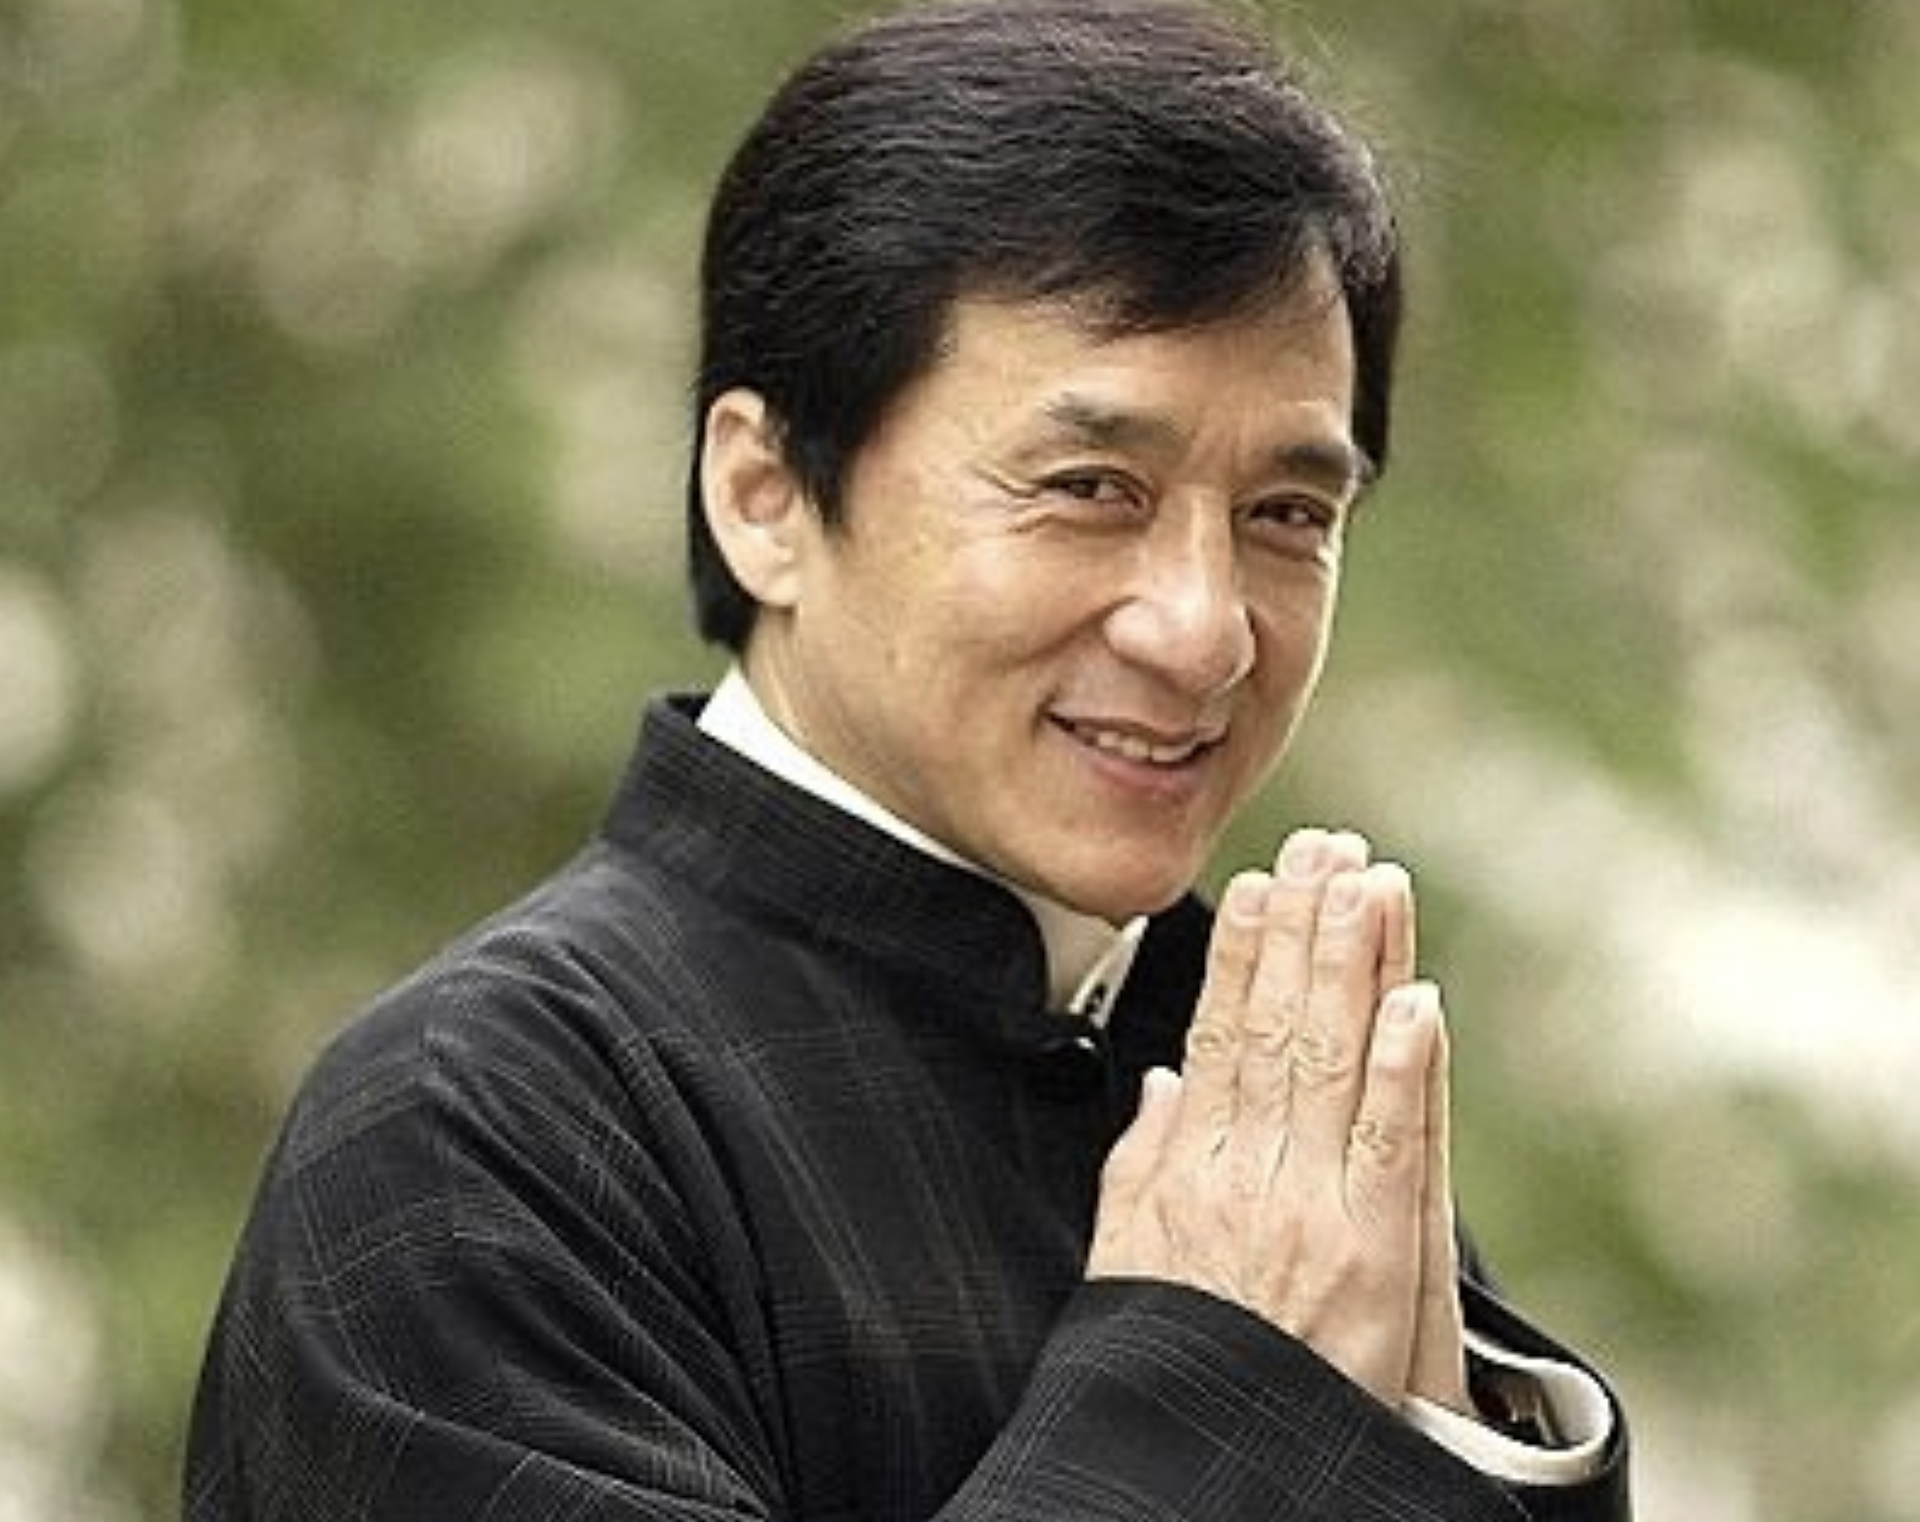 Jackie Chan a șocat pe toată lumea zilele trecute după ce a făcut o serie de declarații despre politică